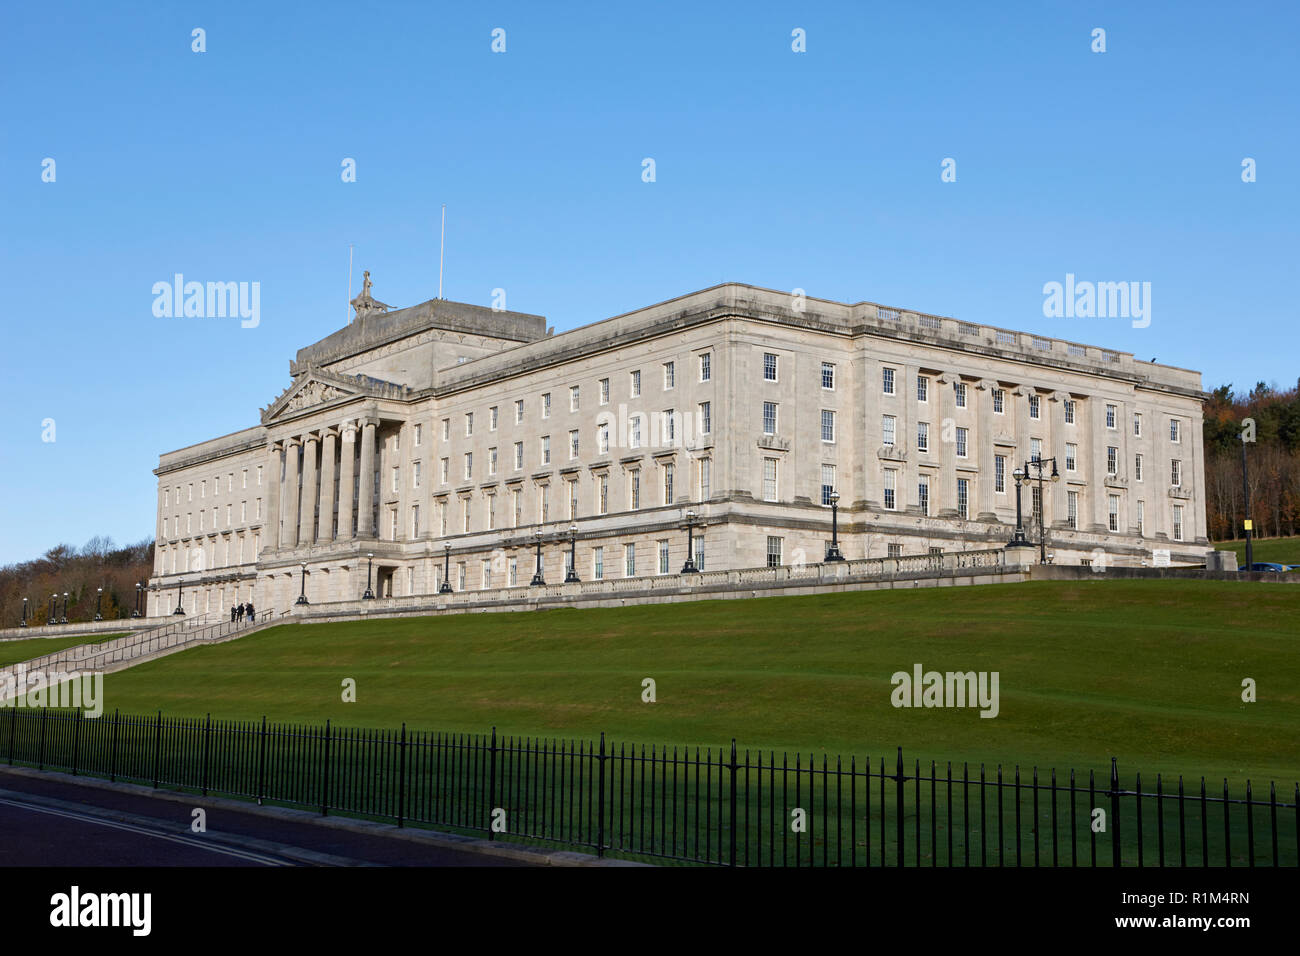 Édifices du Parlement Stormont belfast Irlande du Nord Banque D'Images